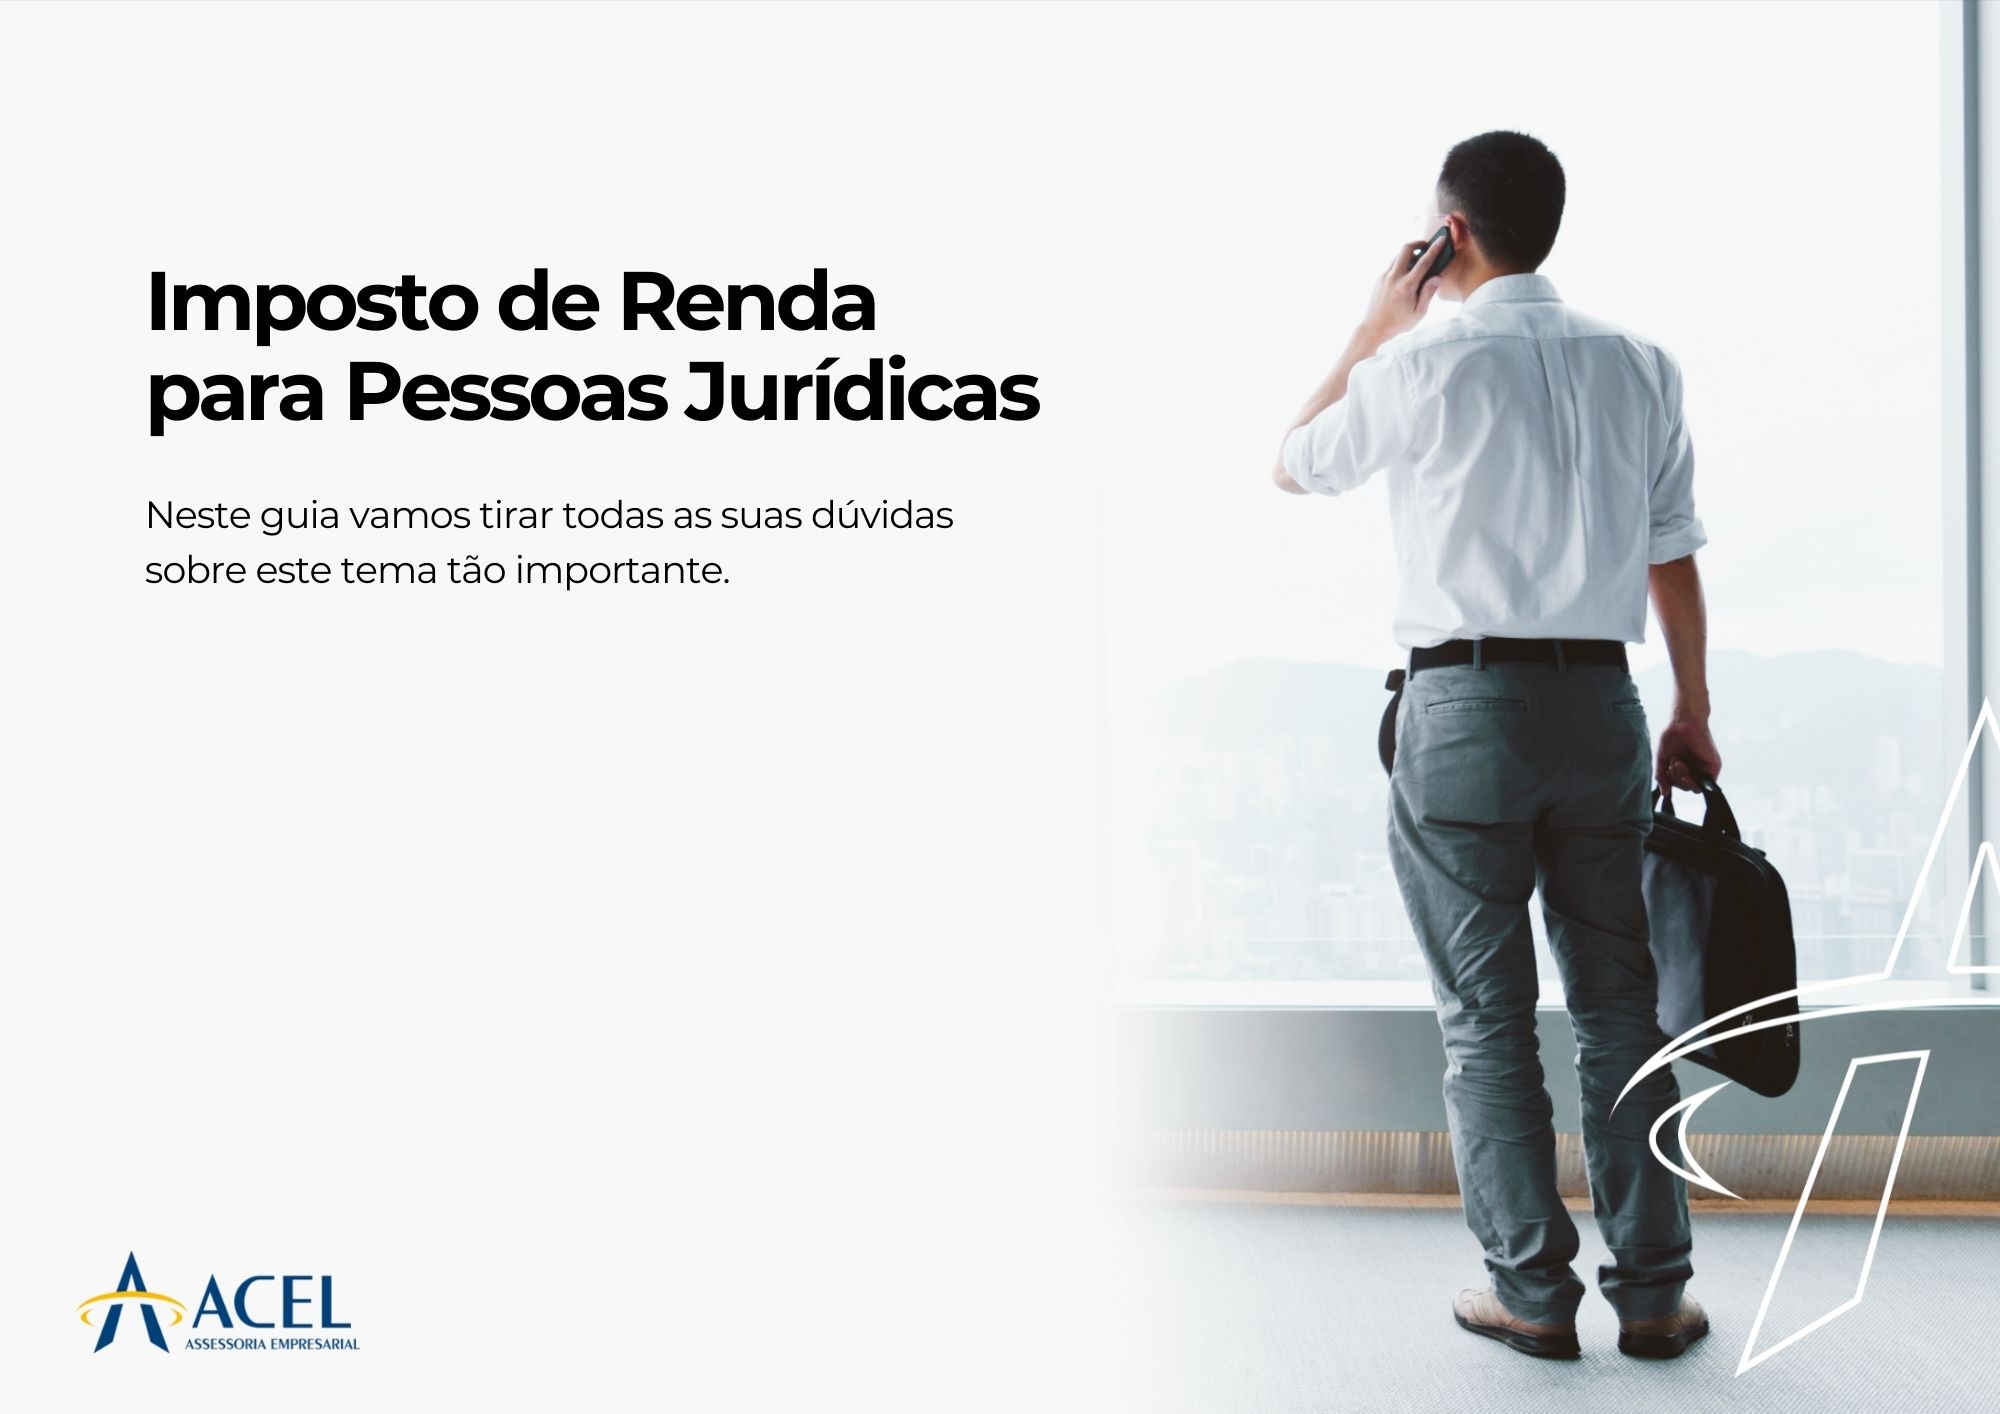 You are currently viewing Imposto de Renda para Pessoas Jurídicas